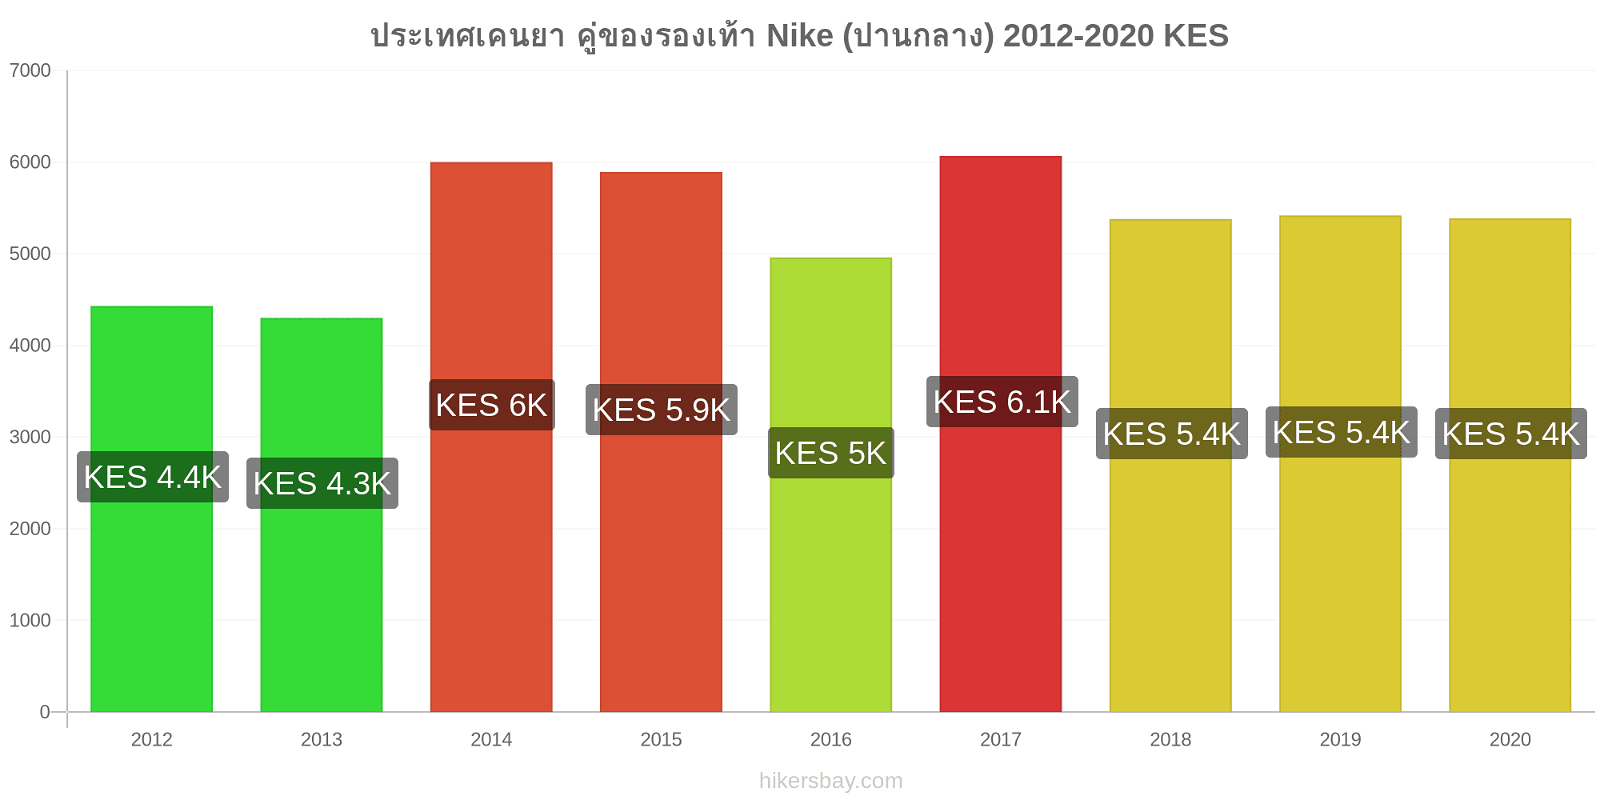 ประเทศเคนยา การเปลี่ยนแปลงราคา คู่ของรองเท้า Nike (ปานกลาง) hikersbay.com